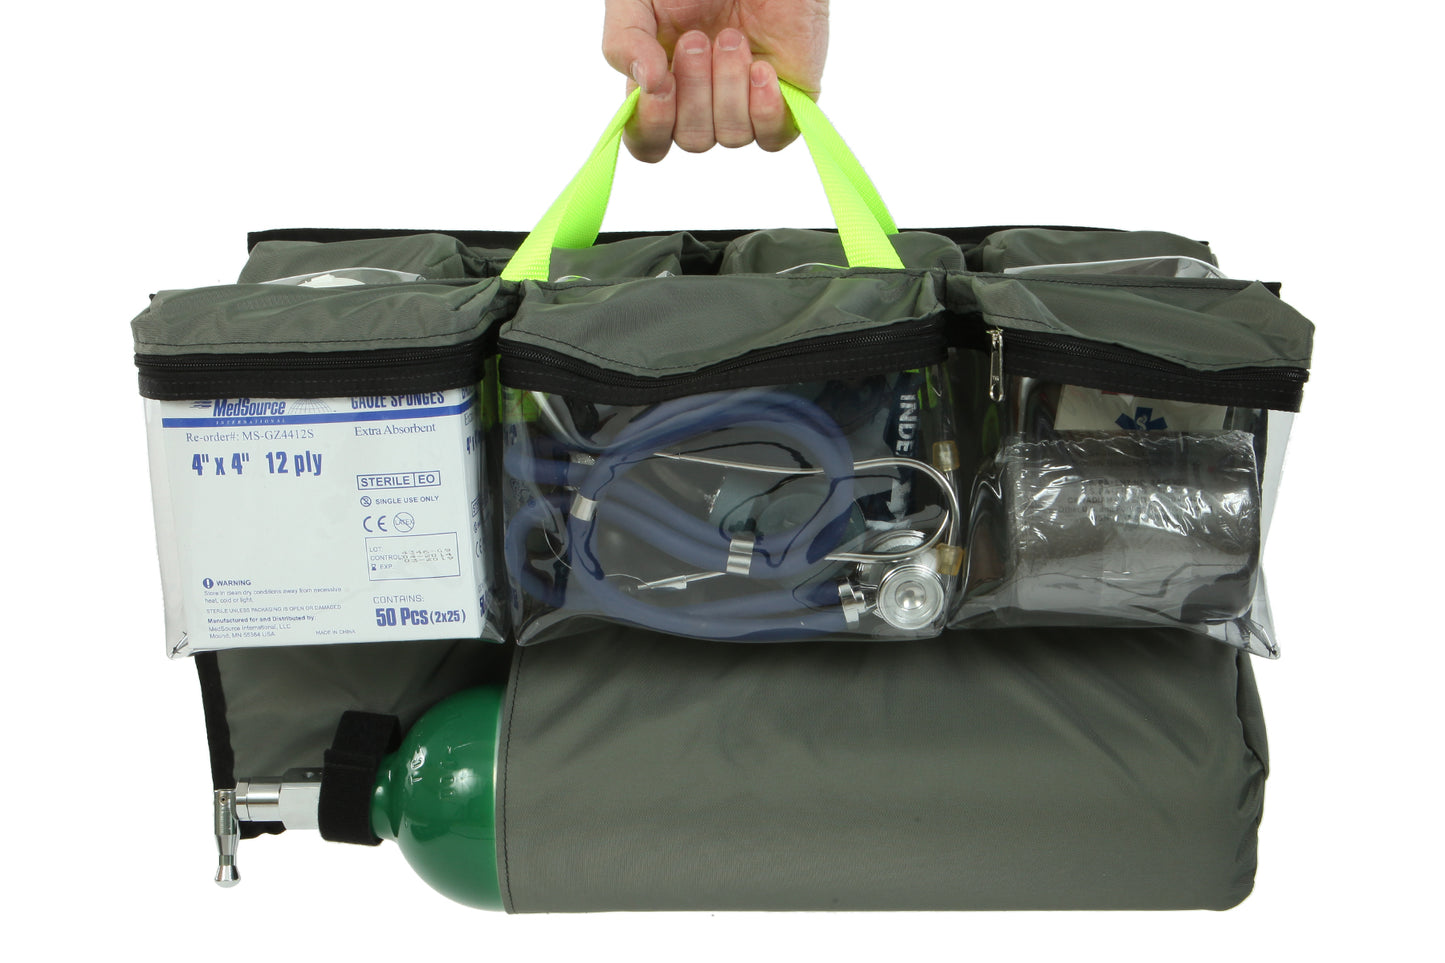 Mega Medic's Bag With Removable Z Pak Max